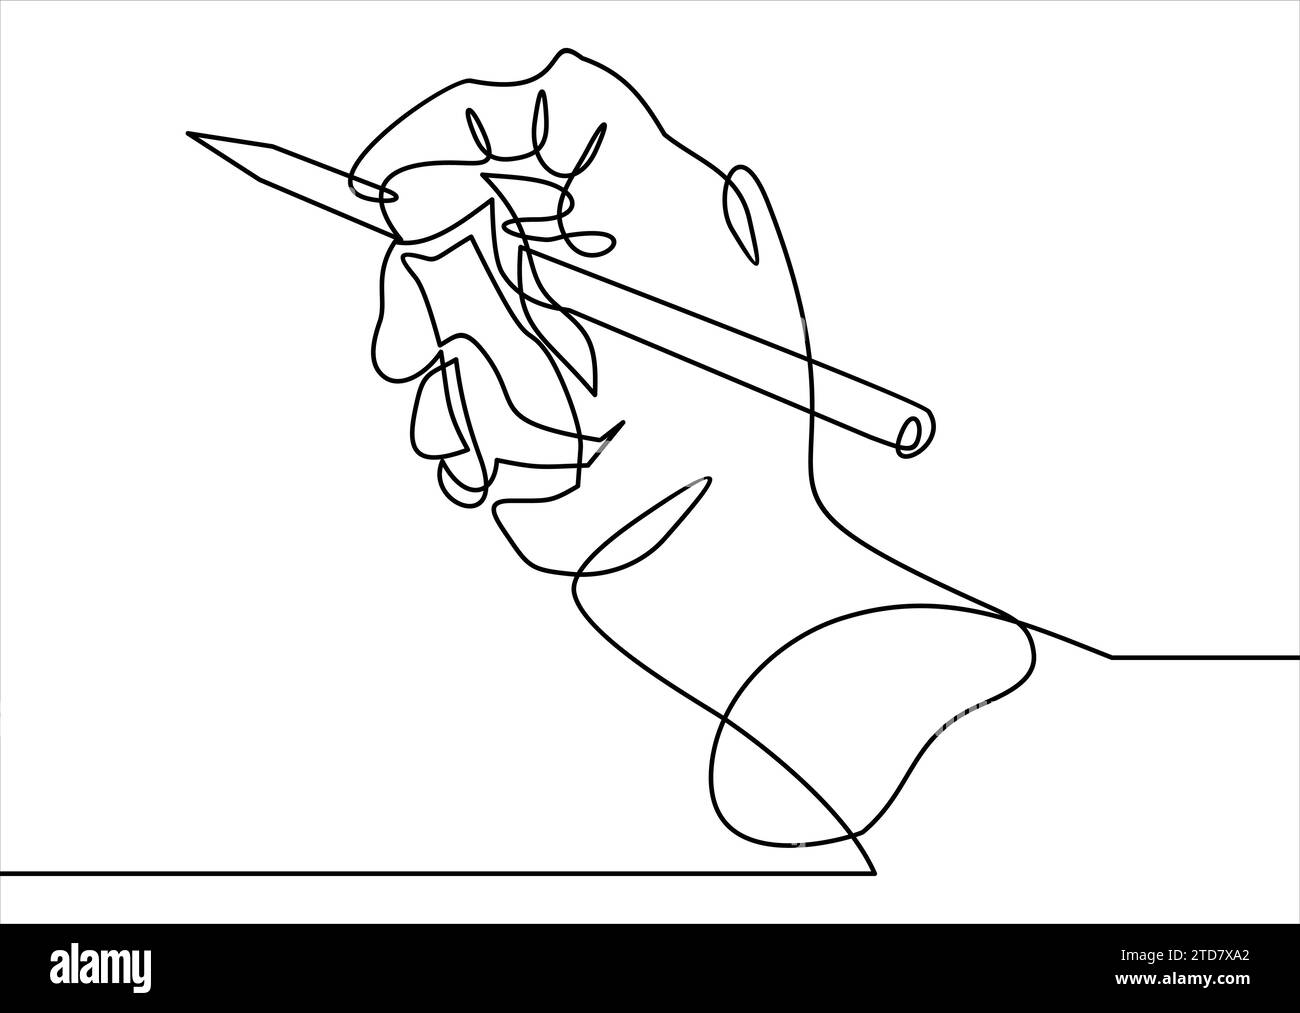 dessin en ligne continu de la ligne de dessin à la main avec l'illustration pencil.vector Illustration de Vecteur